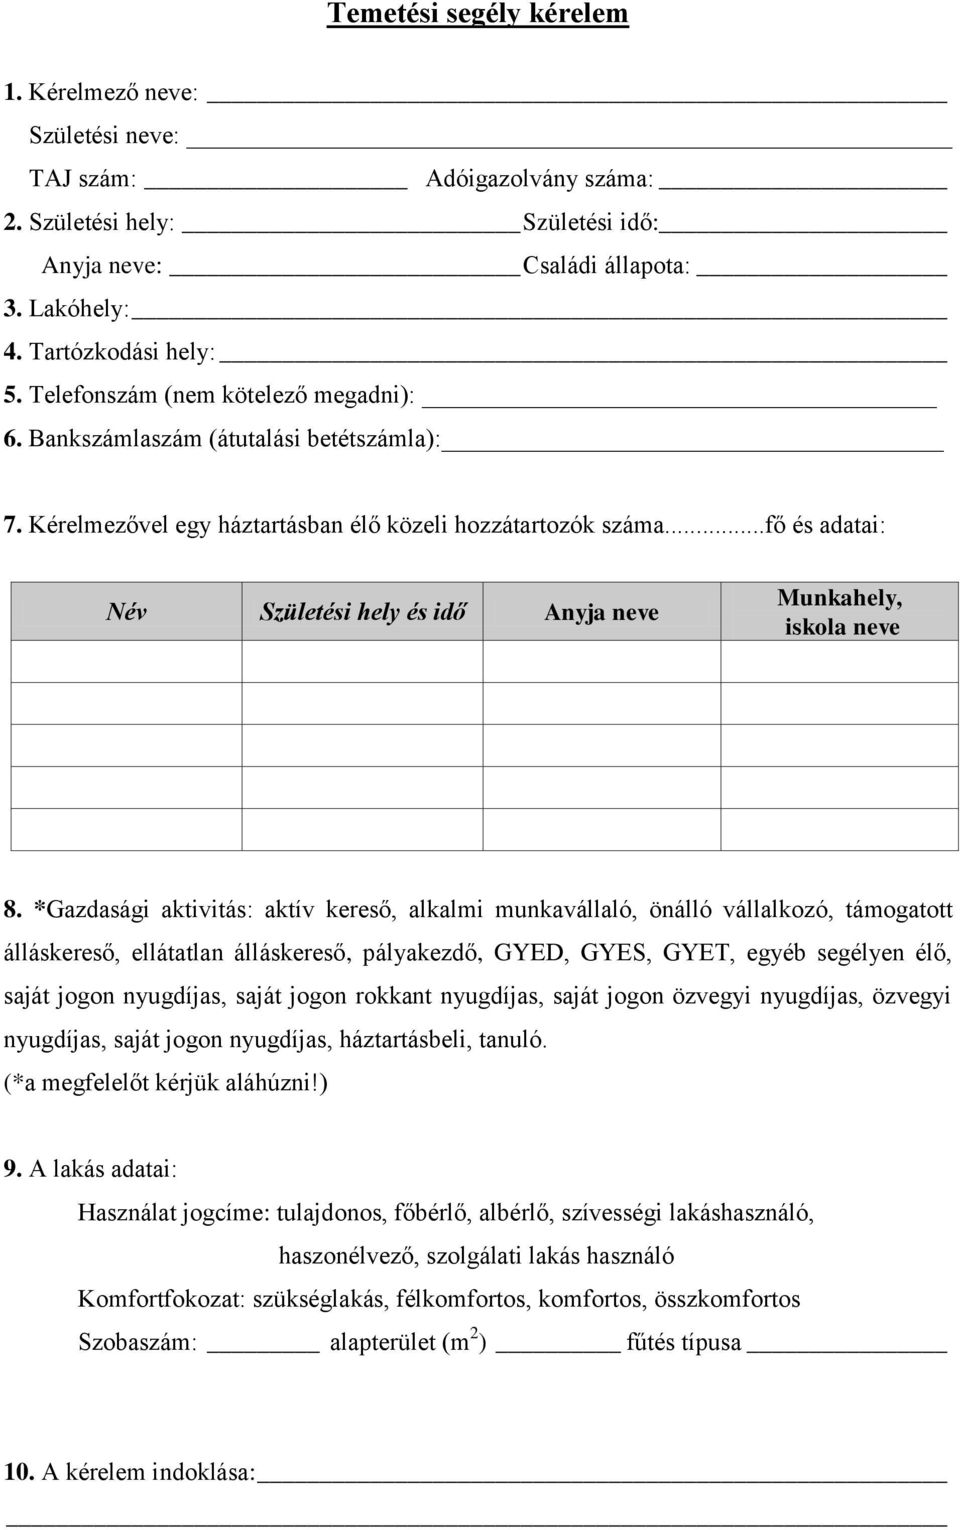 Temetési segély kérelem - PDF Ingyenes letöltés